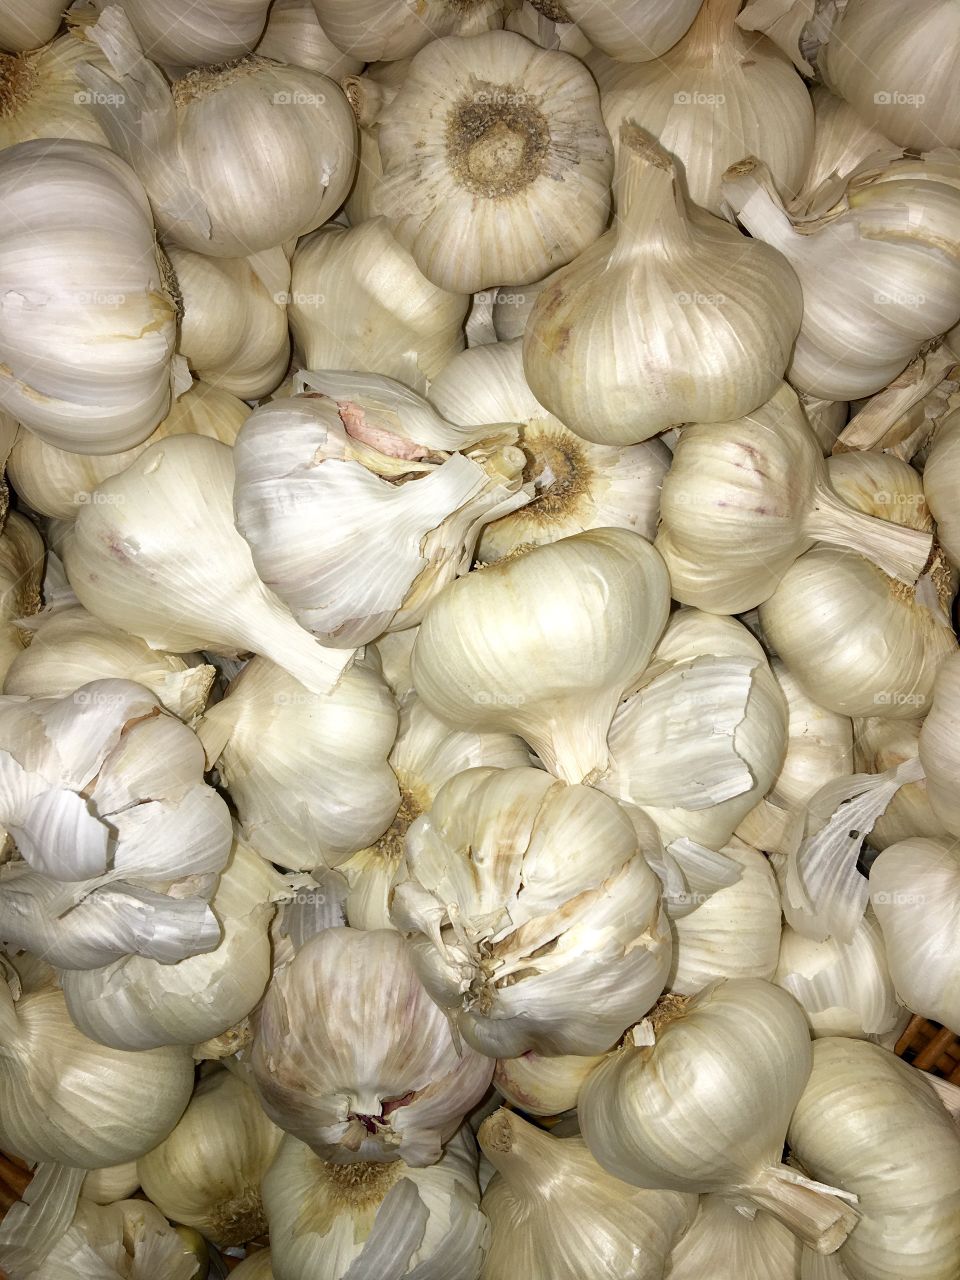 Garlic bulbs loose in bin at market.